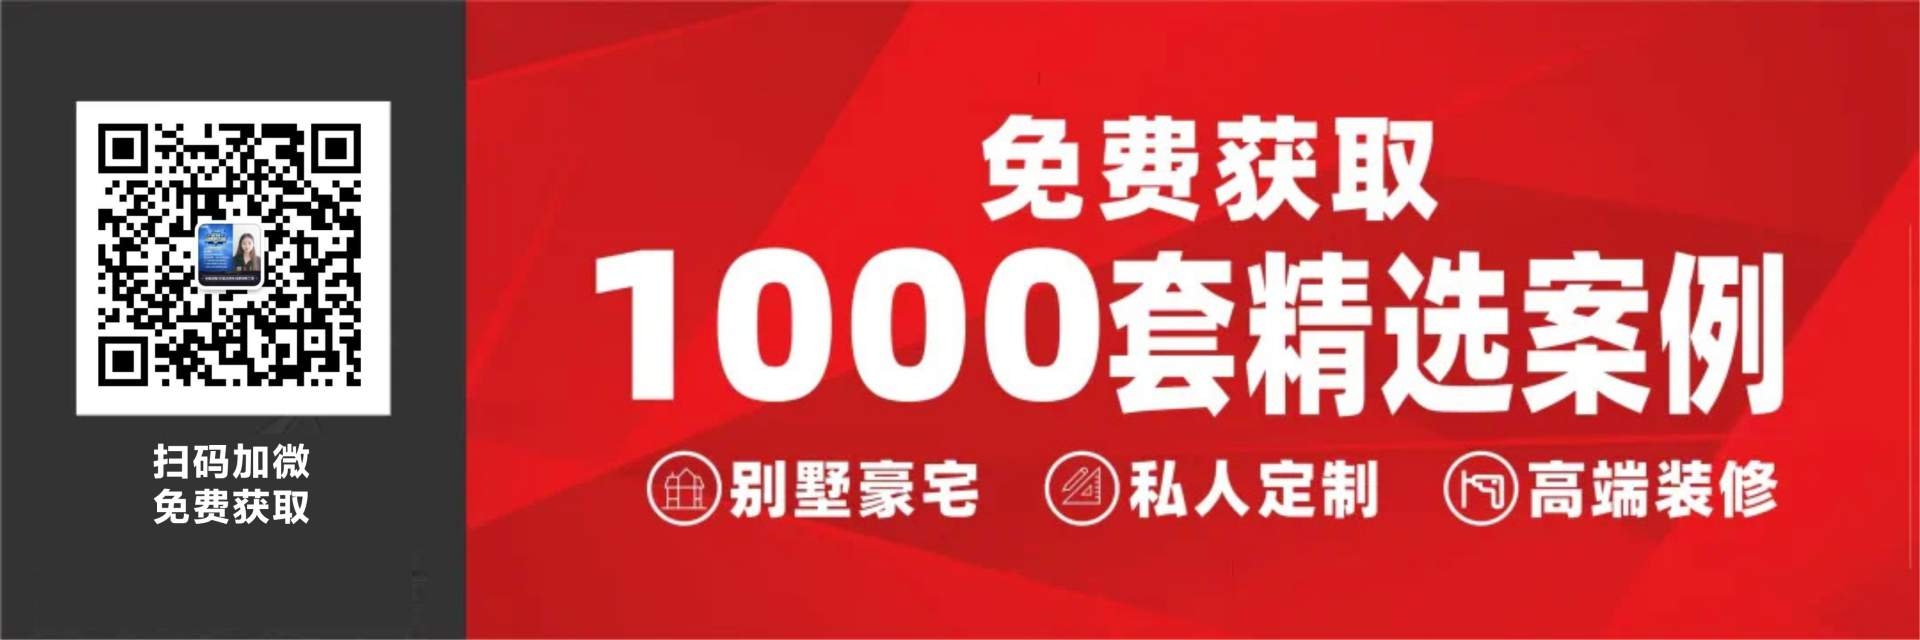 热烈祝贺“广东名匠装饰集团德阳区”《2021第三次股东经营大会》取得圆满成功